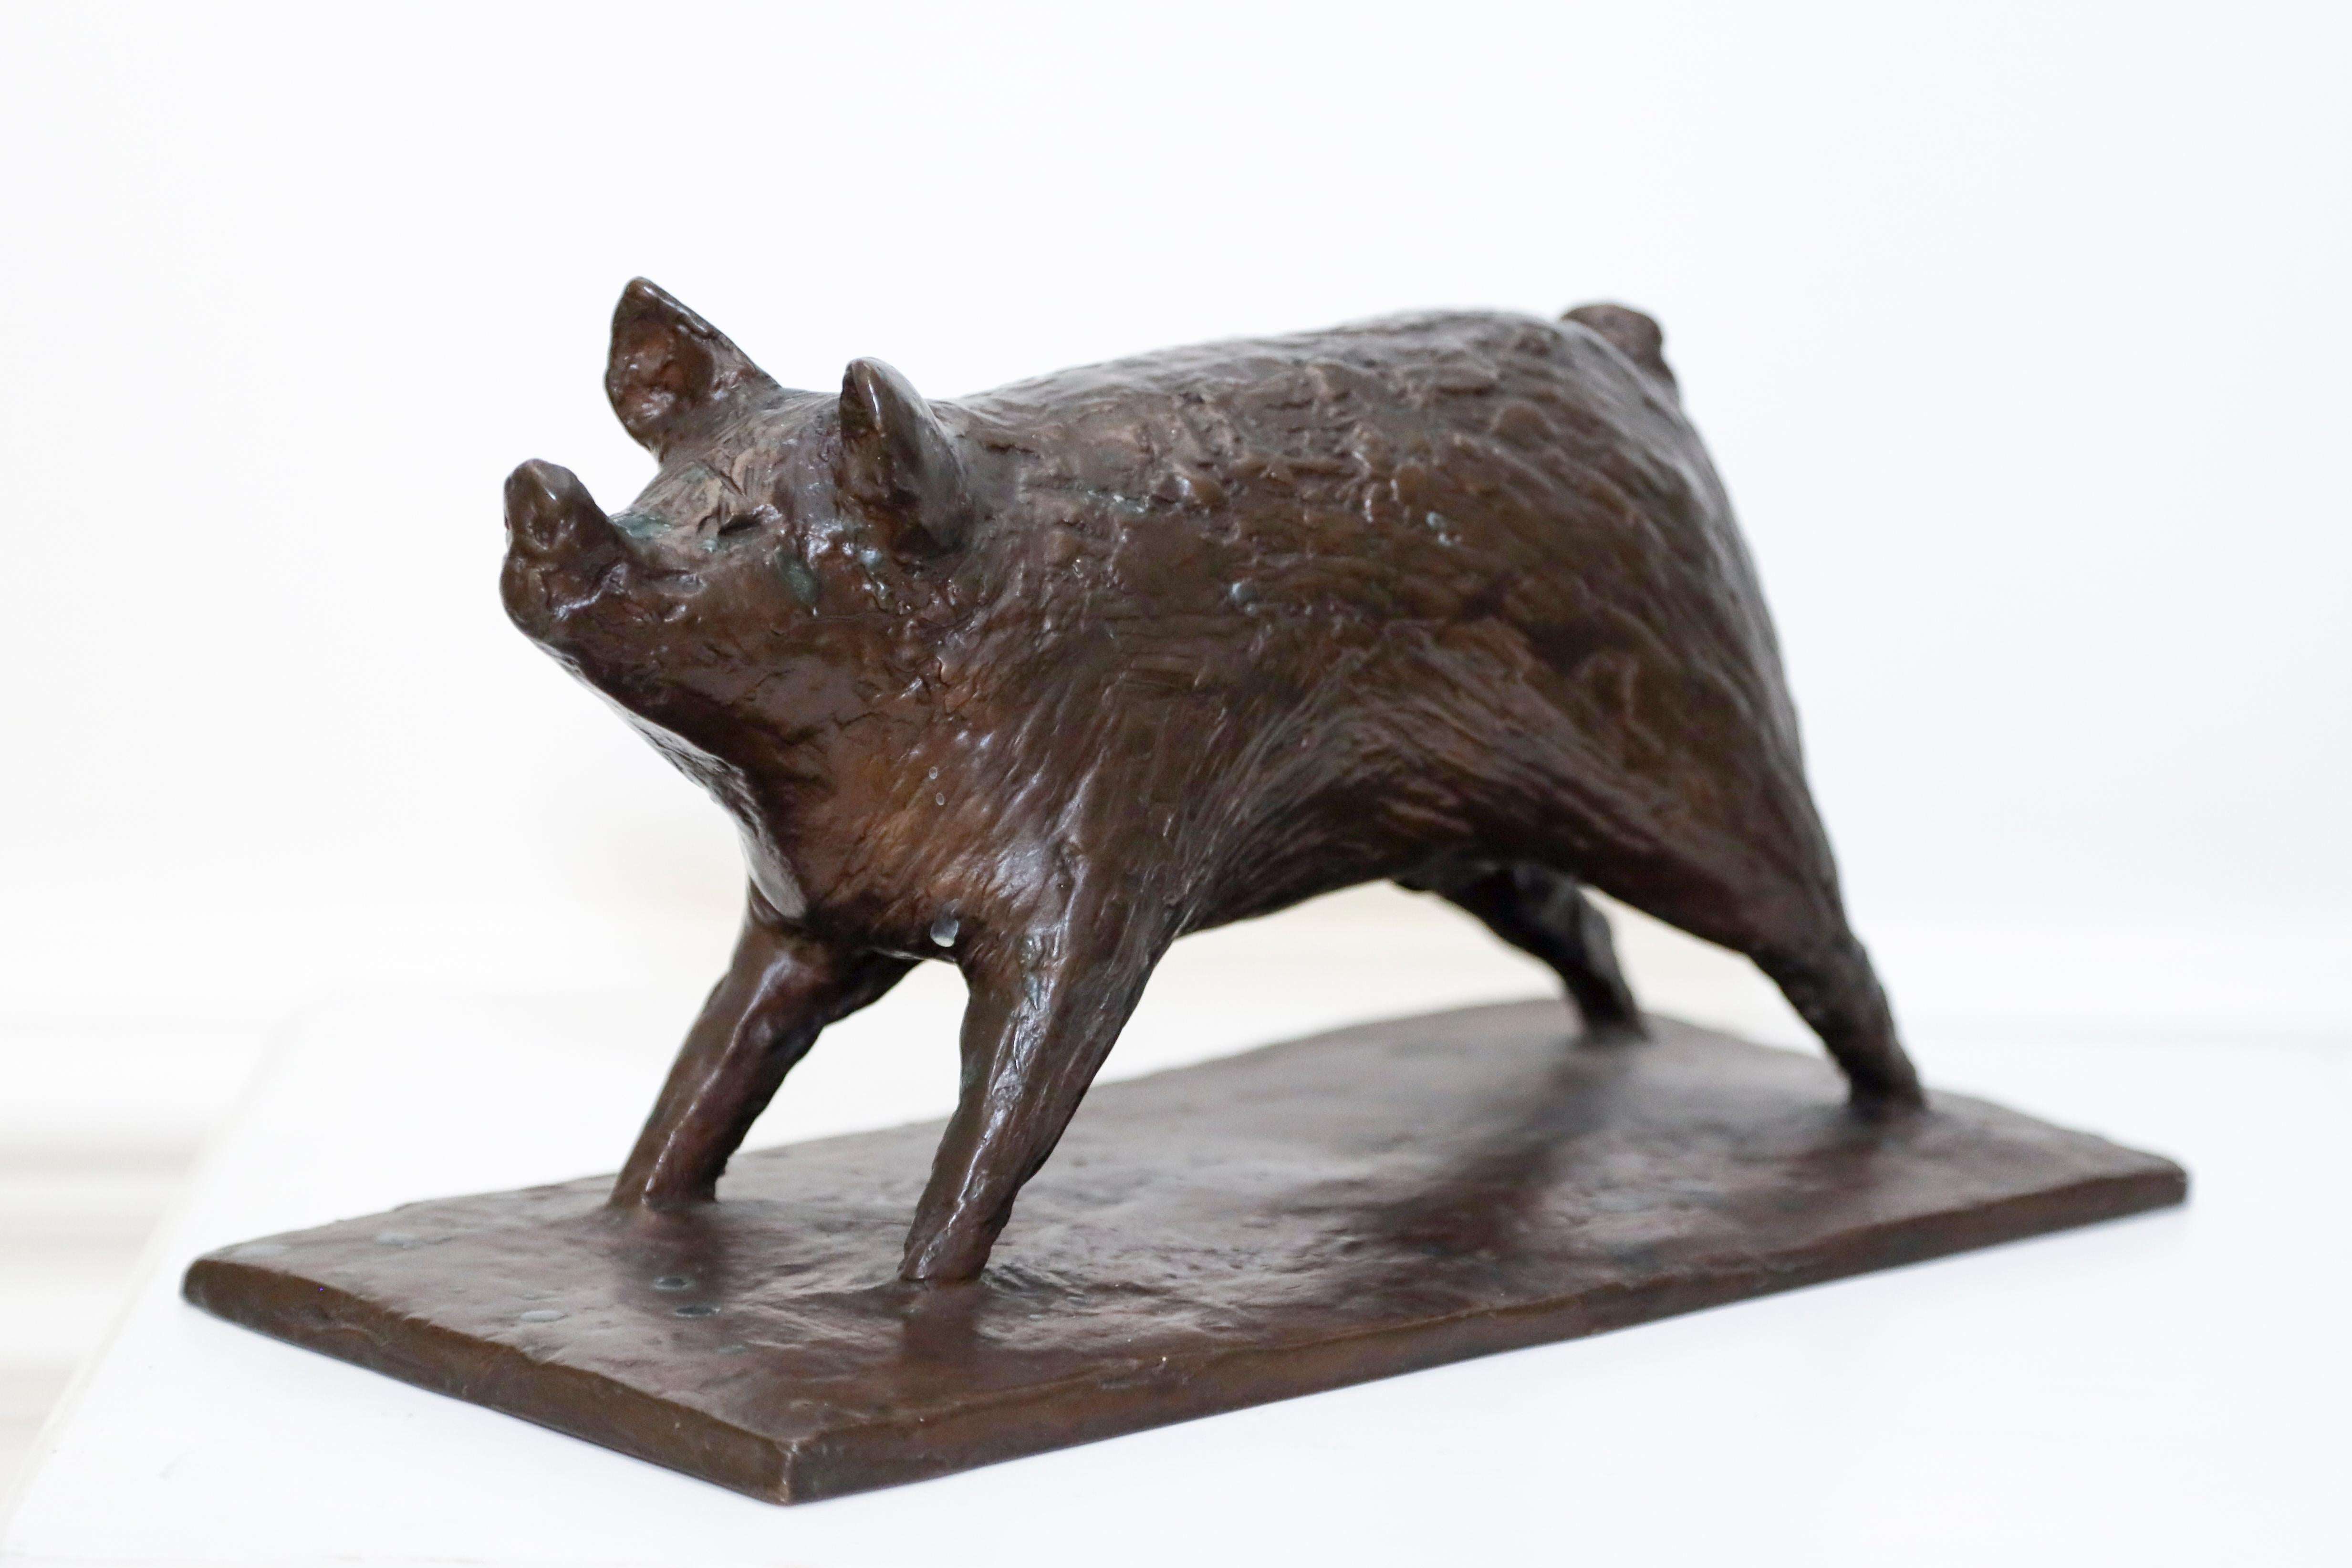 Rosalind Stracey Still-Life Sculpture - A Bronze Sculpture of a Young Boar  ( sculpture of a pig)